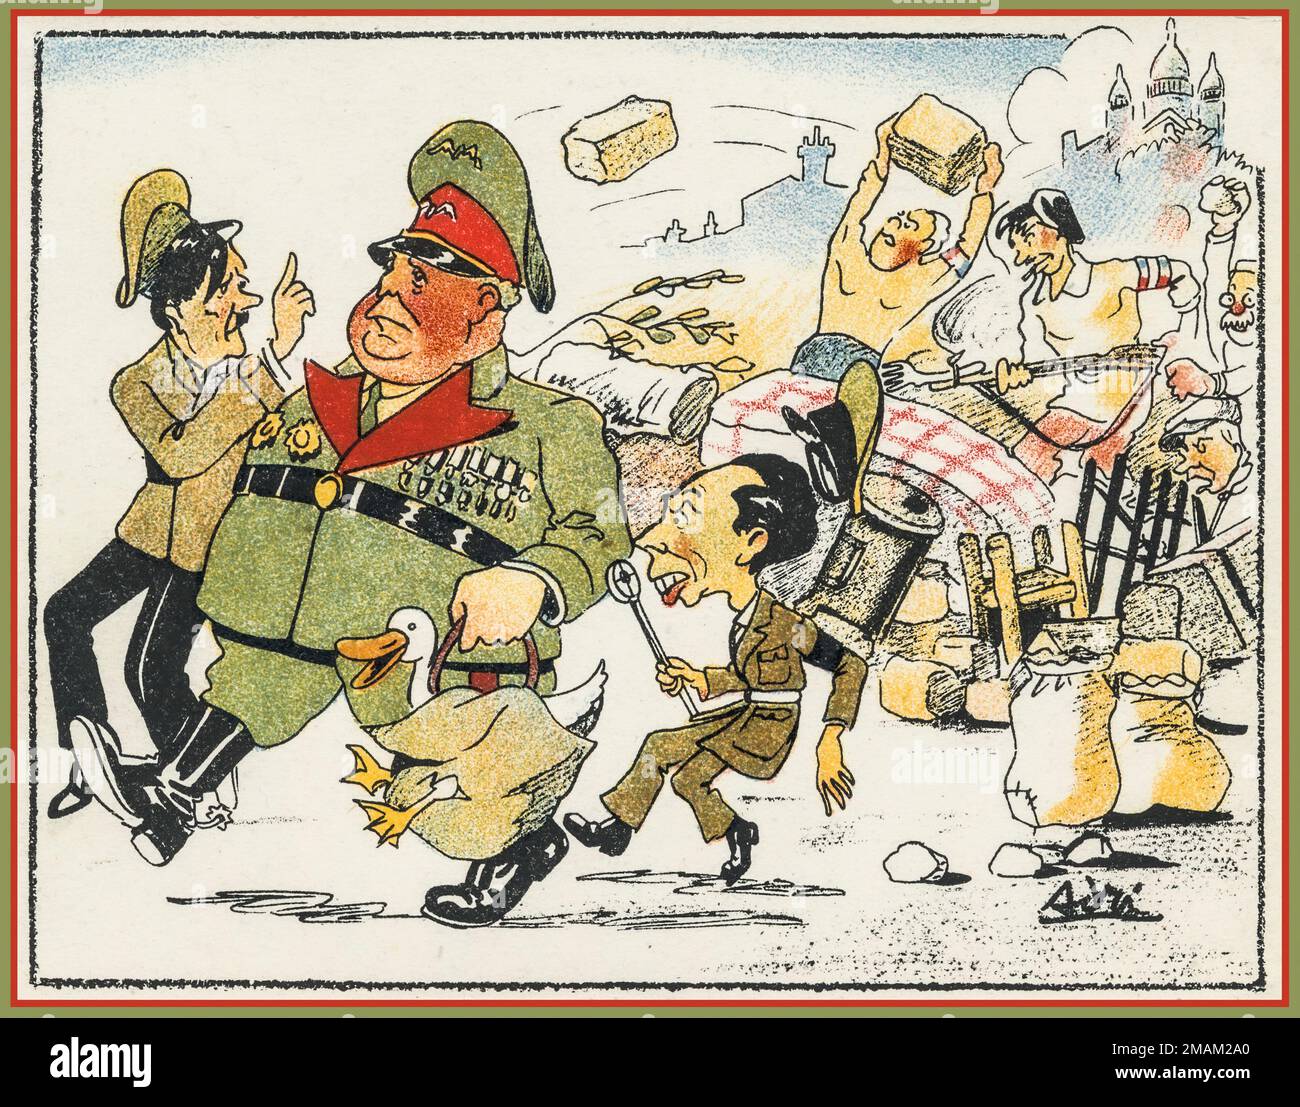 WW2 Anti-Nazi-Karikatur mit einem fetten Hermann Göring, mit Adolf Hitler, der sich beschimpft, und Joseph Goebbels mit seinem Propagandamikrofon in Frankreich, der an der französischen Pariser Grenze starken Widerstand erfährt. Der zweite Weltkrieg Stockfoto